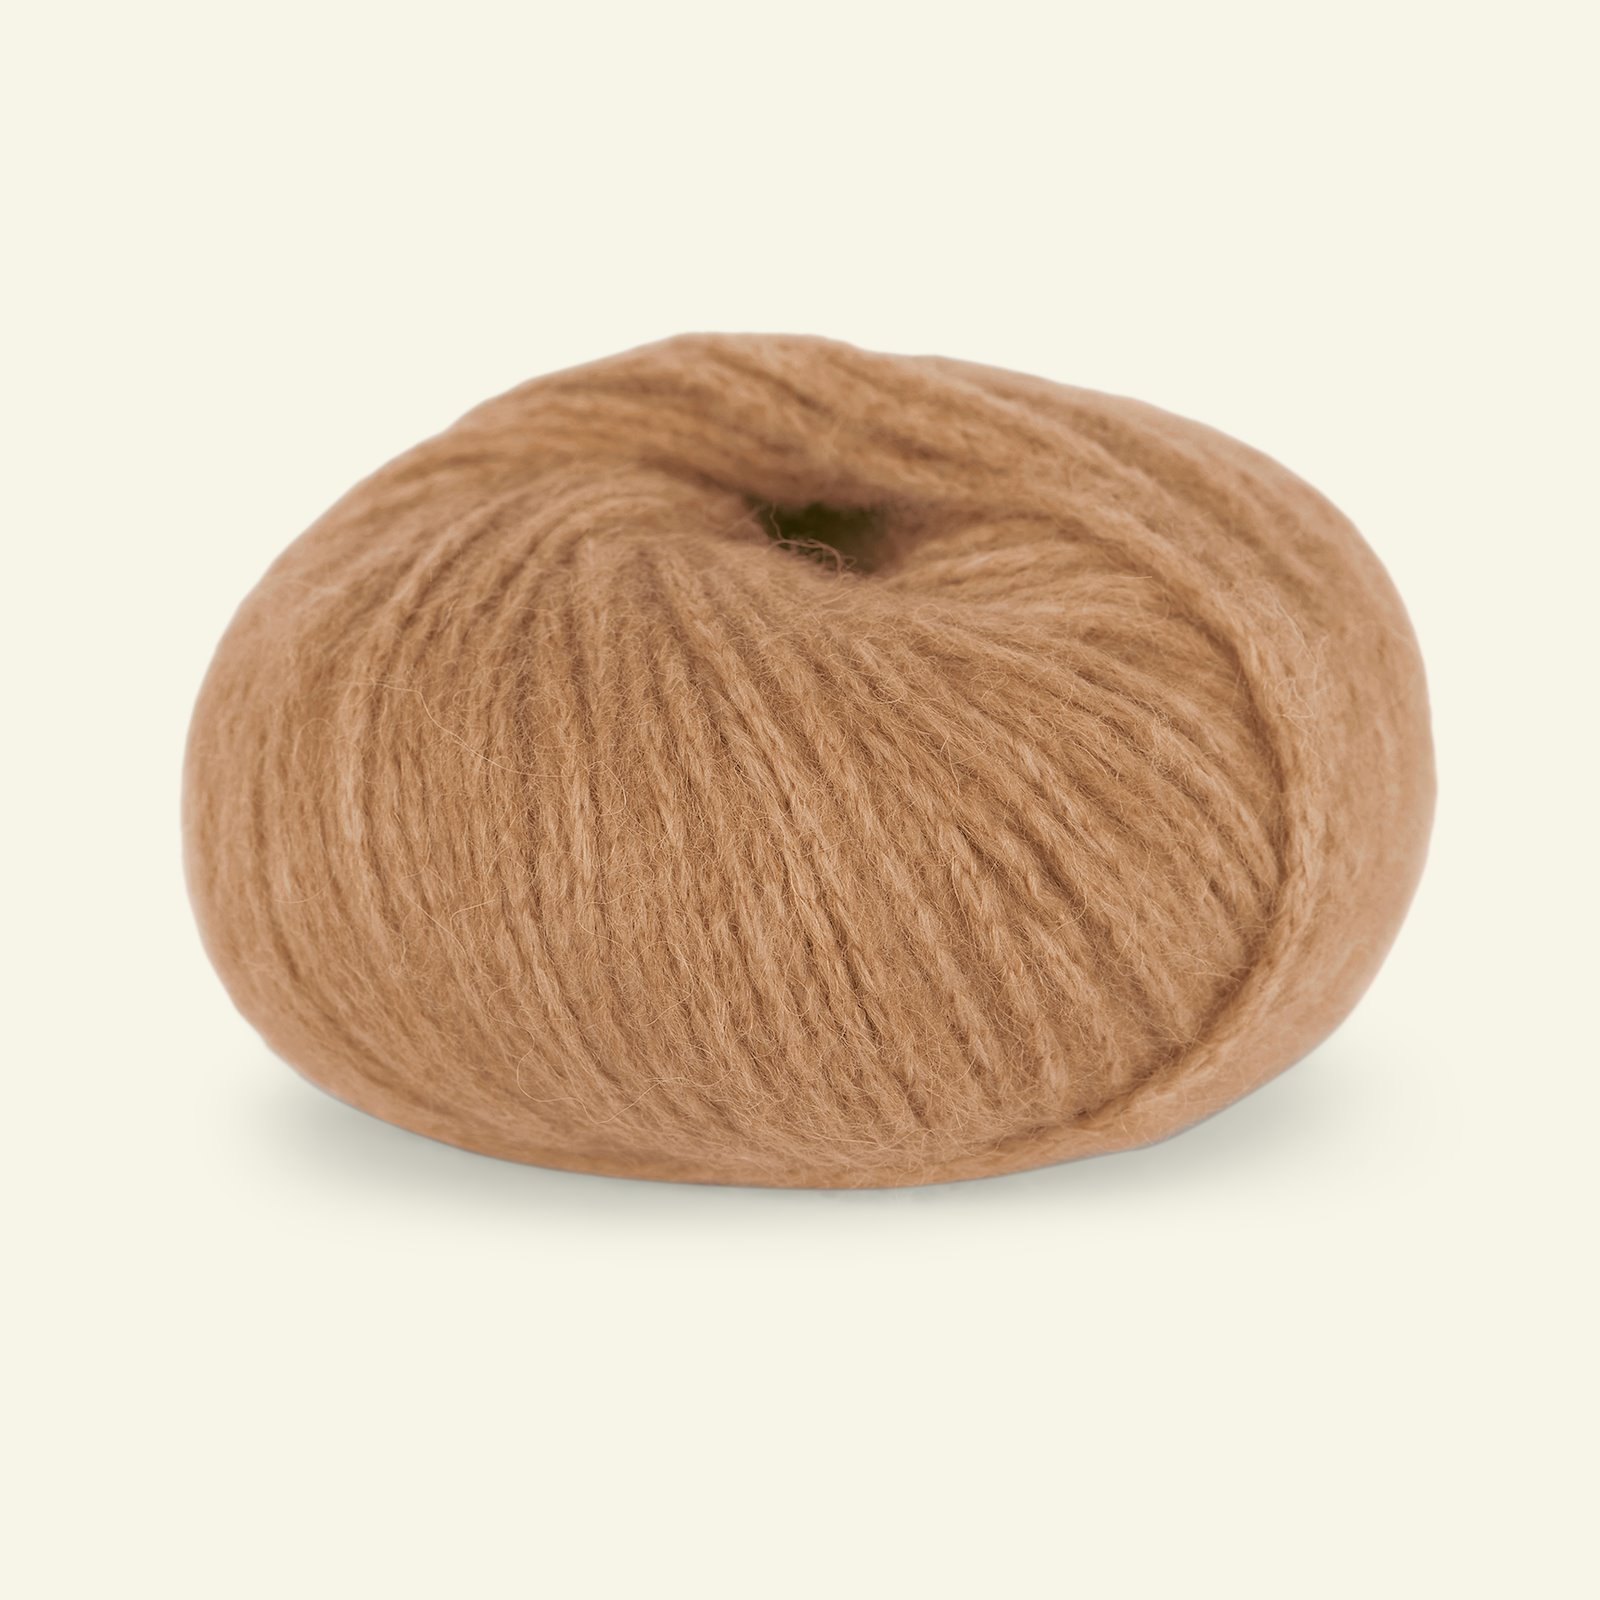 Du Store Alpakka, alpaca mixed yarn "Pus", caramel (4049) 90000732_pack_b